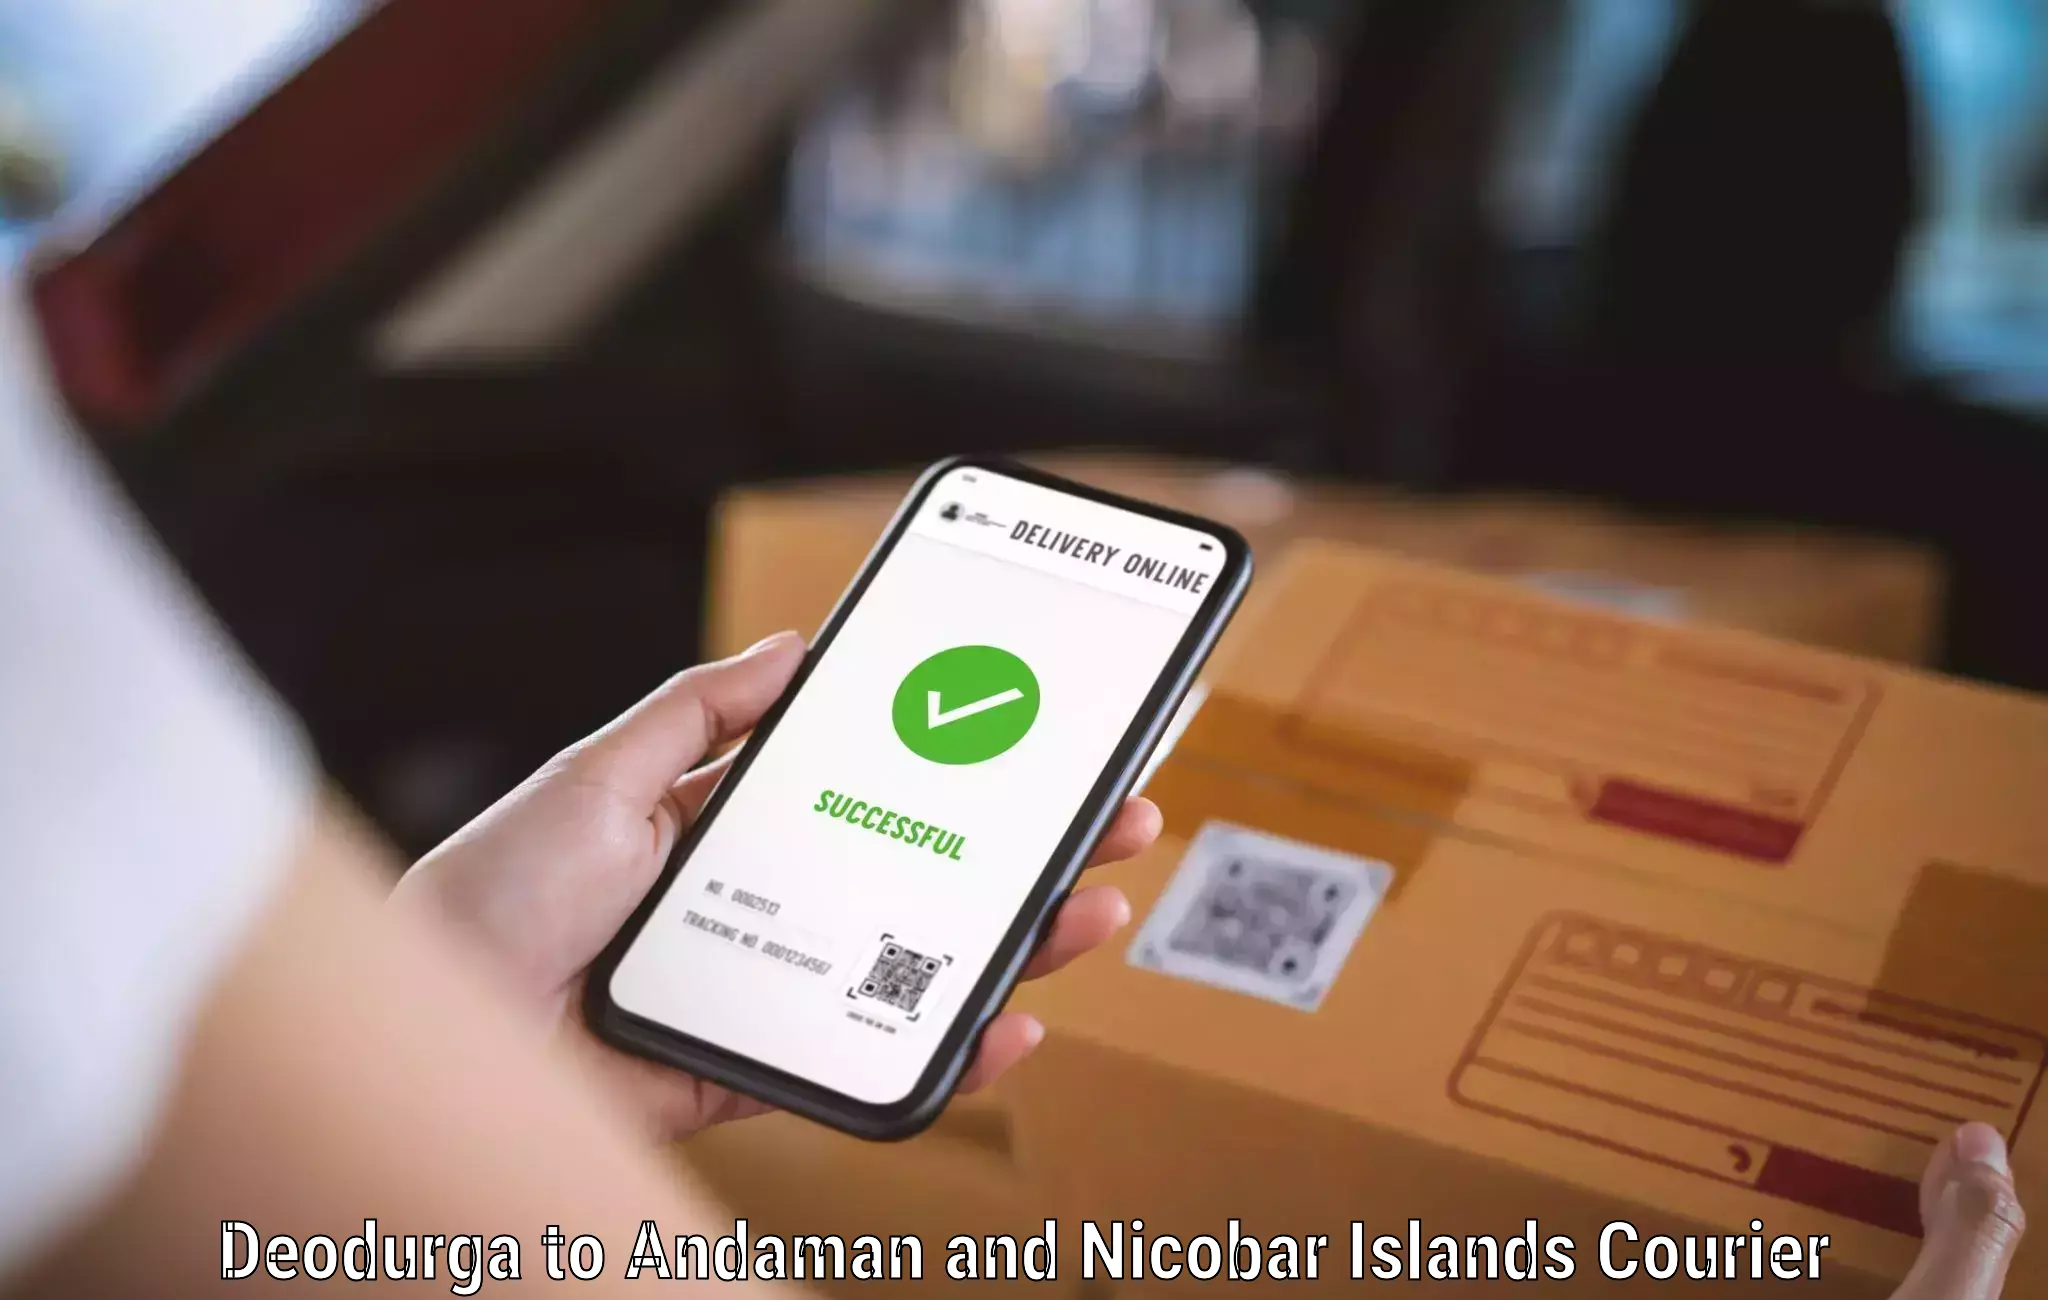 Courier service partnerships Deodurga to Andaman and Nicobar Islands